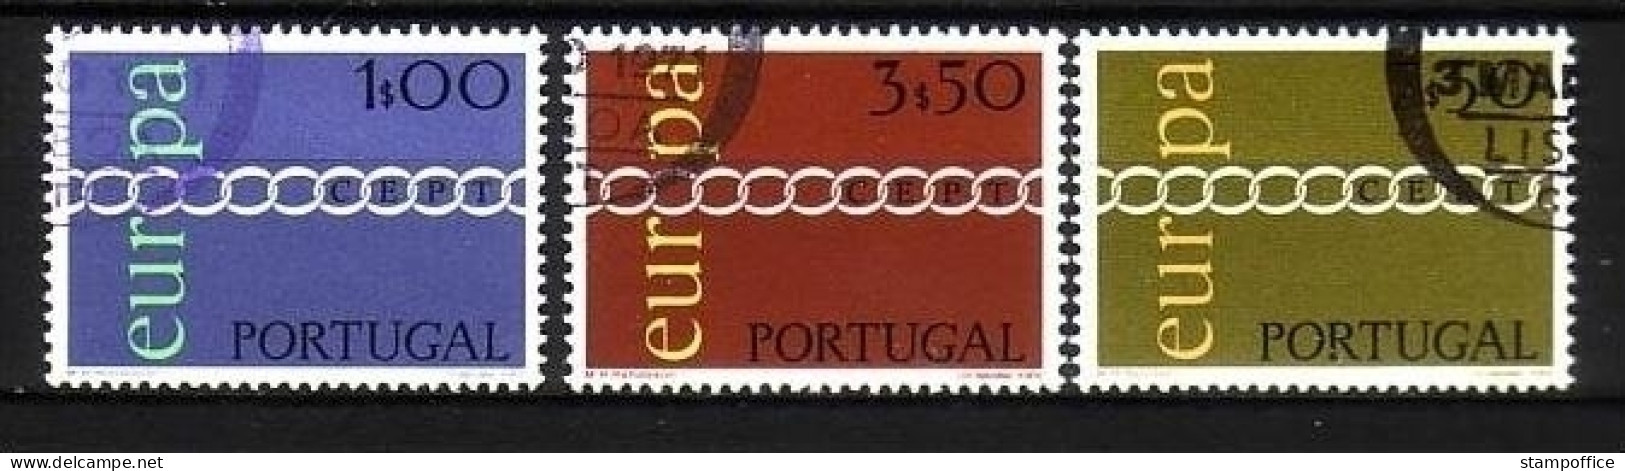 PORTUGAL MI-NR. 1127-1129 GESTEMPELT(USED) EUROPA 1971 - KETTE - 1971